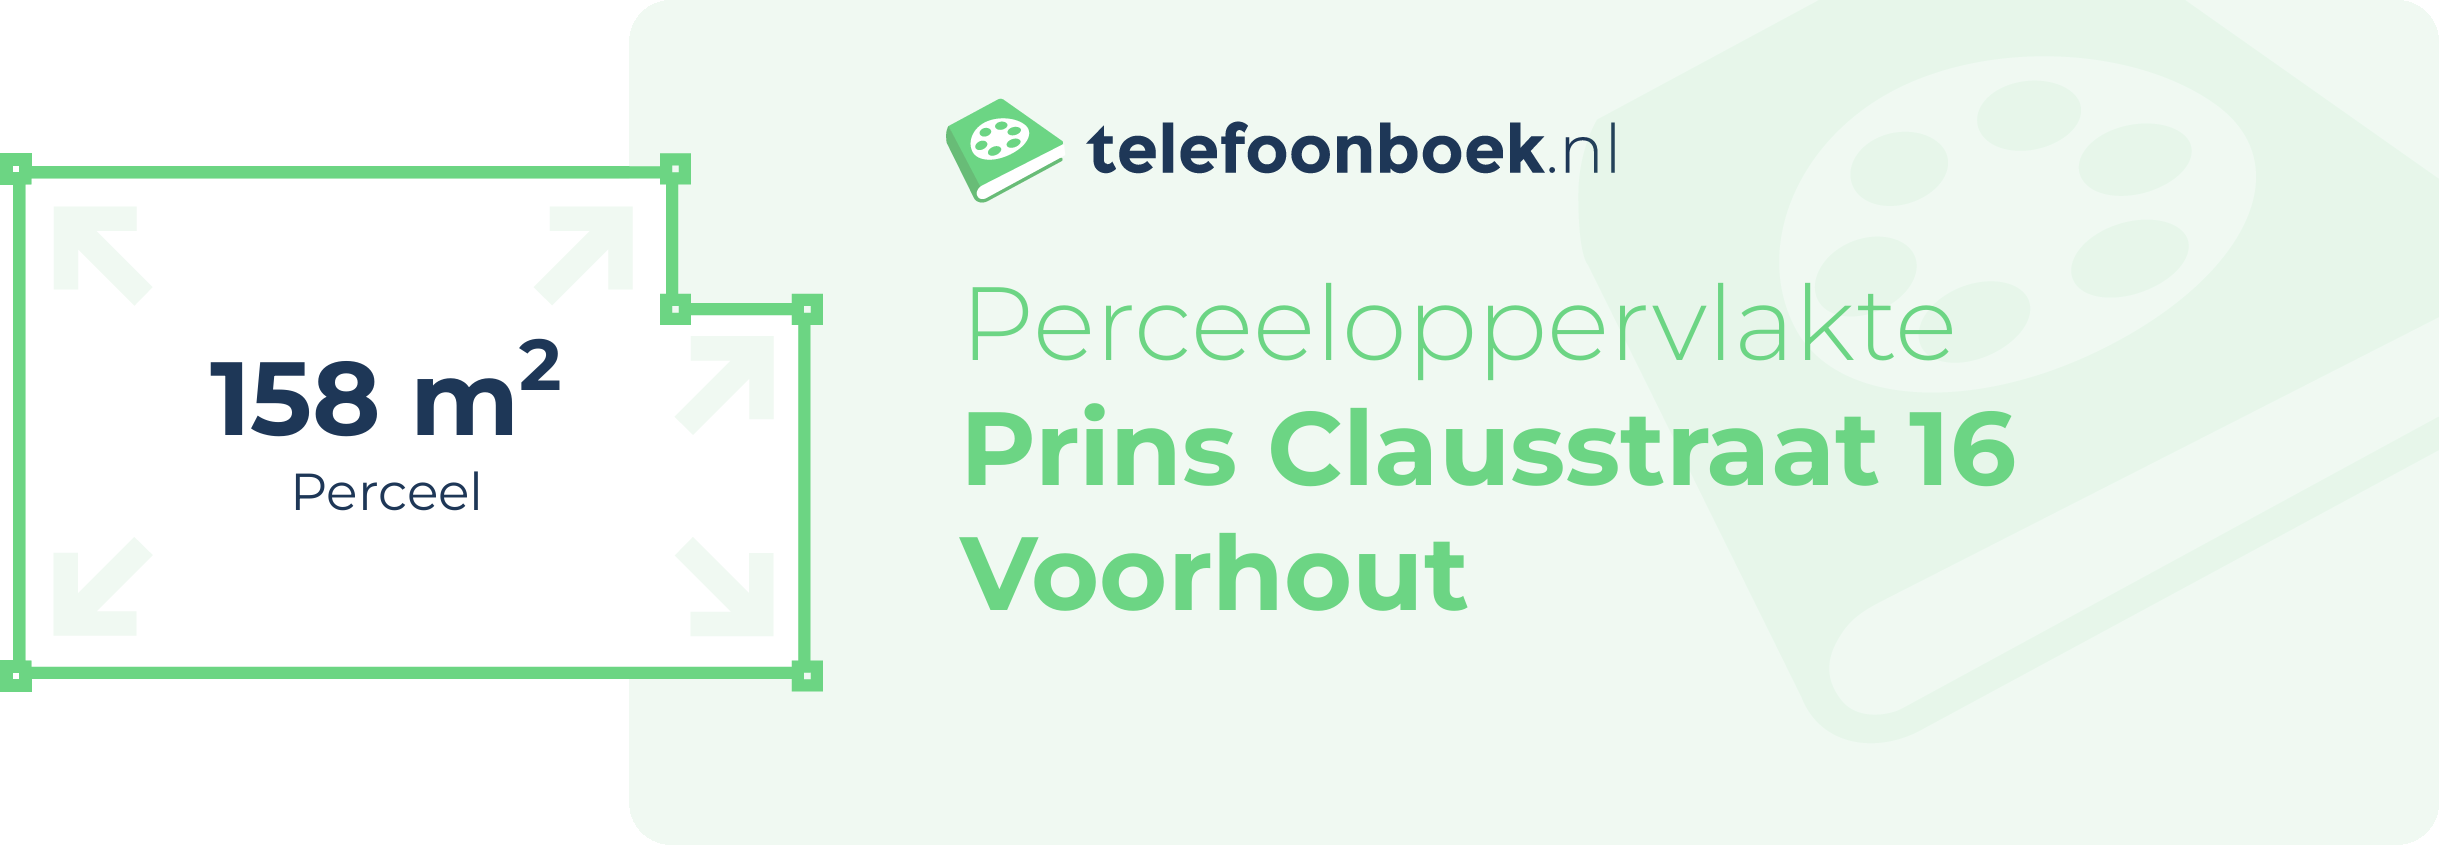 Perceeloppervlakte Prins Clausstraat 16 Voorhout